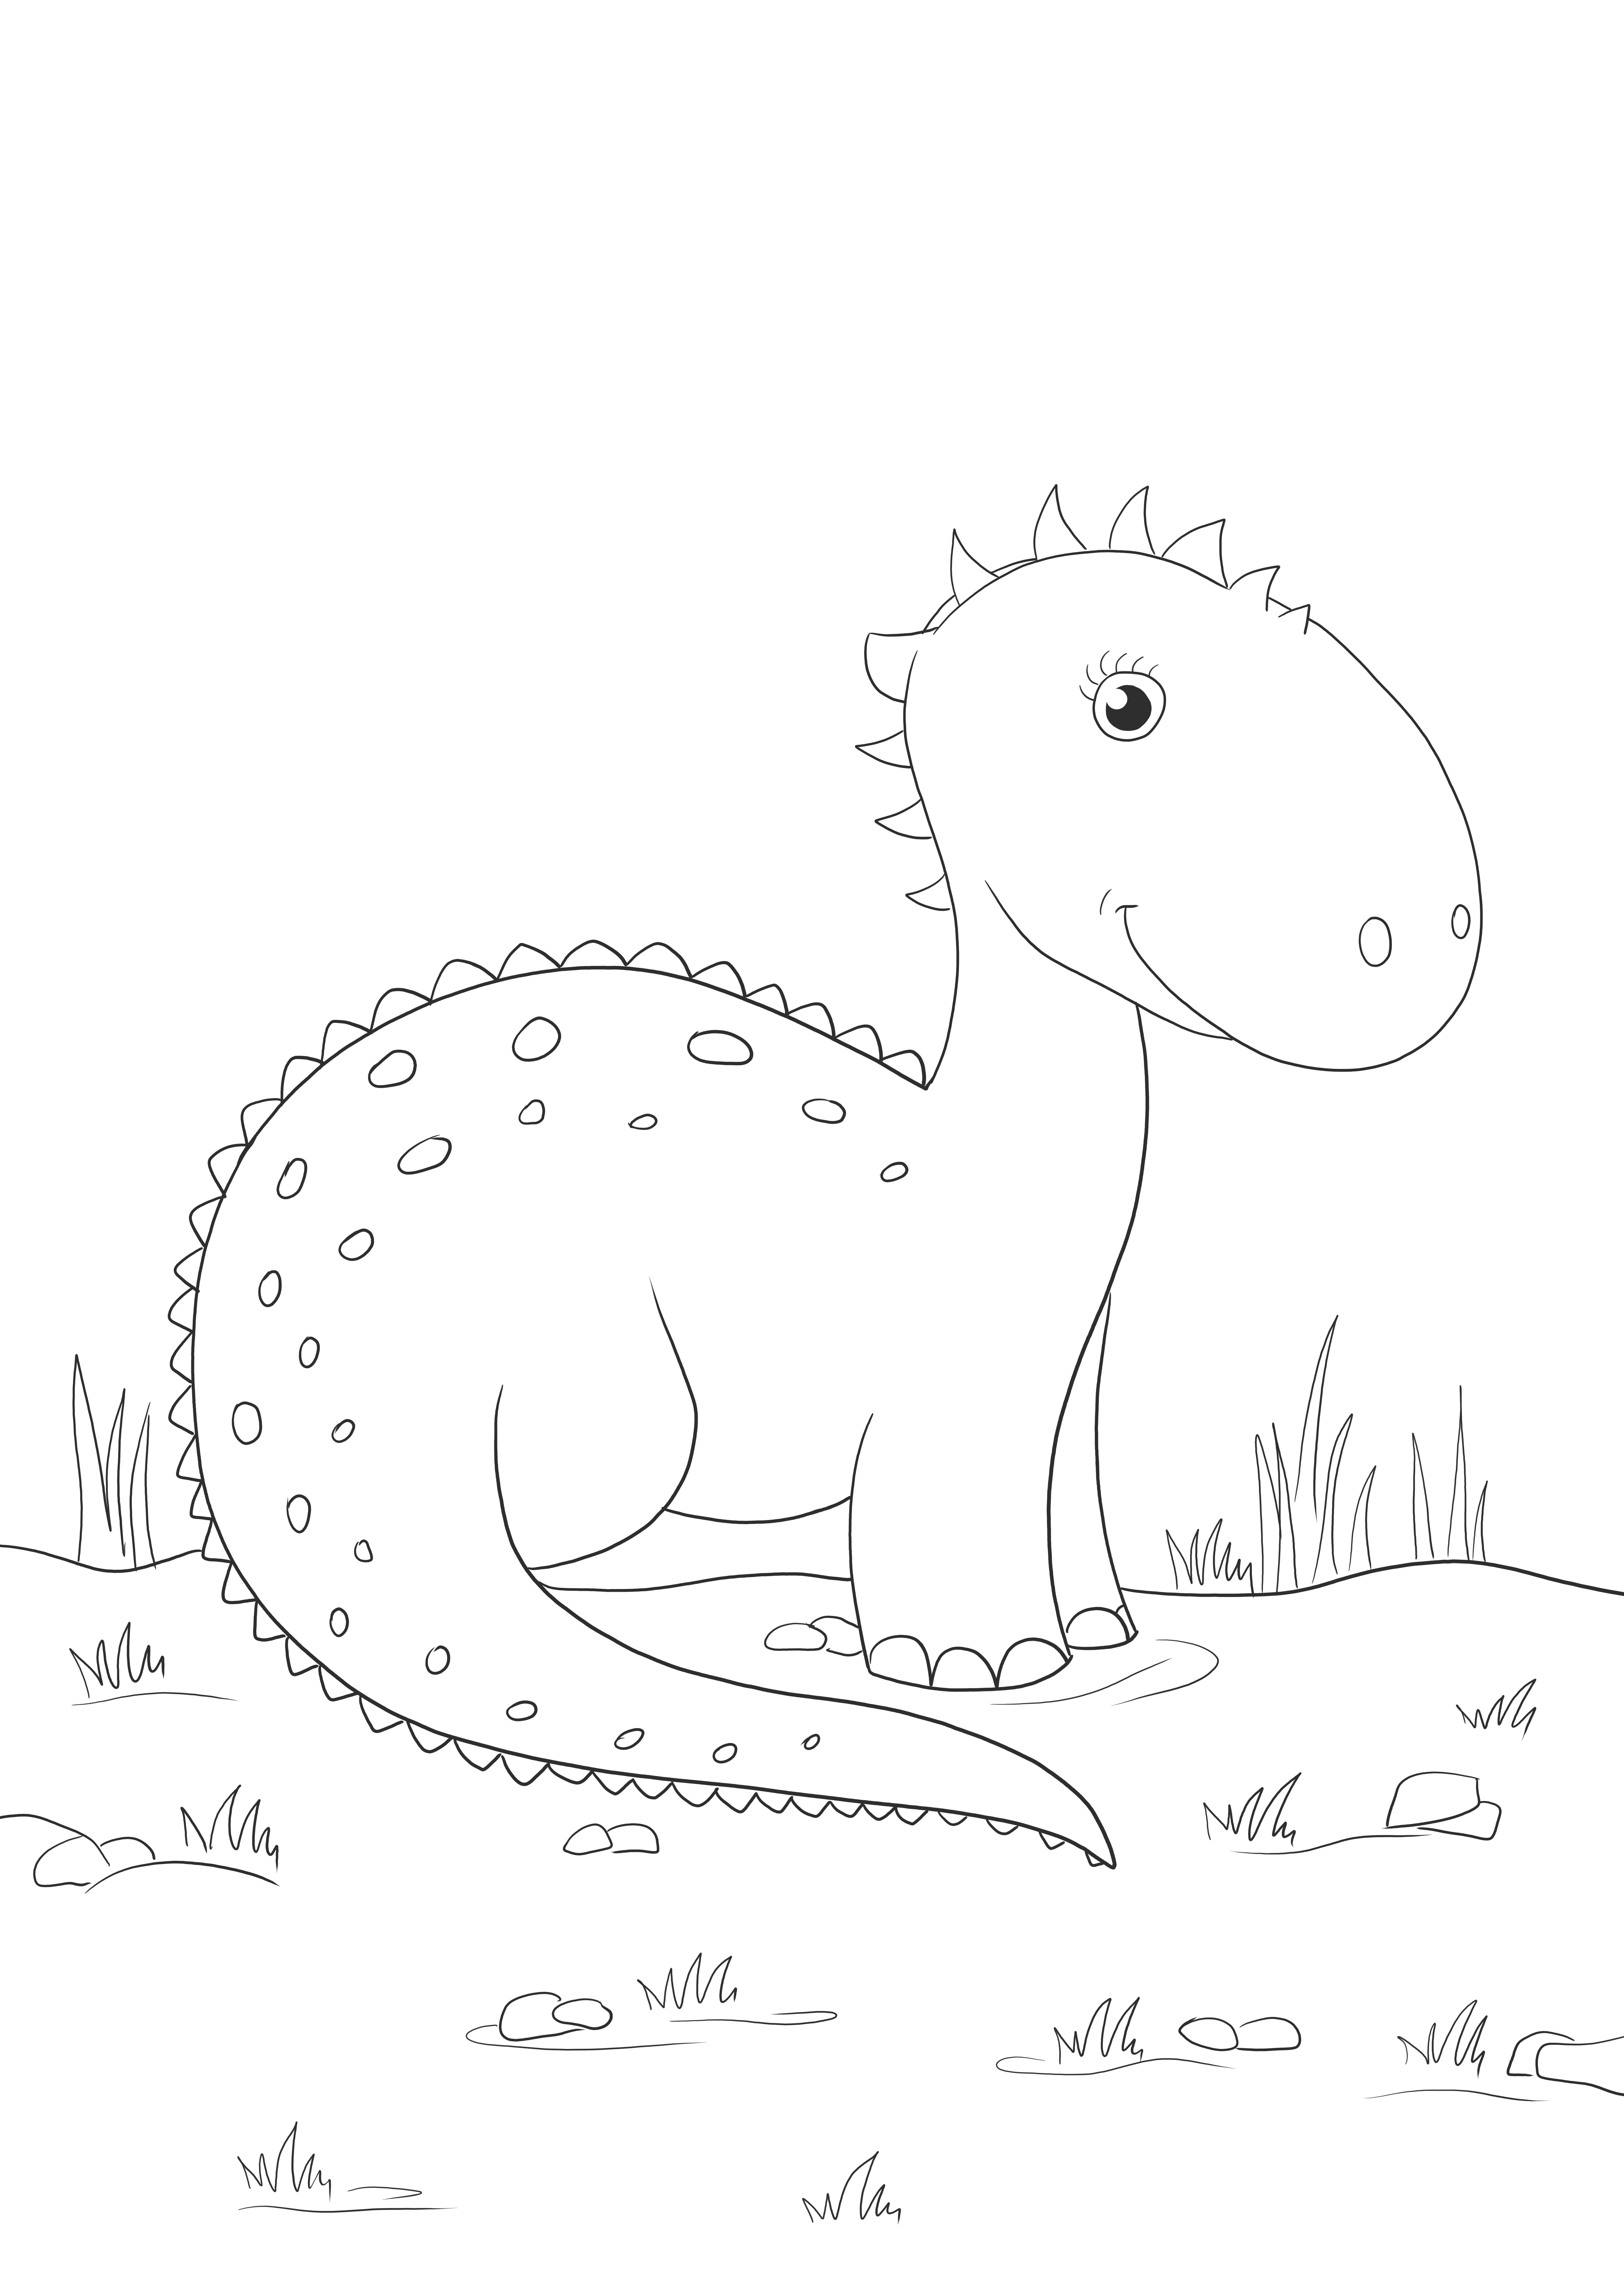 Niedliches Cartoon-Dinosaurier-Werbegeschenk zum Ausmalen für Kinder jeden Alters